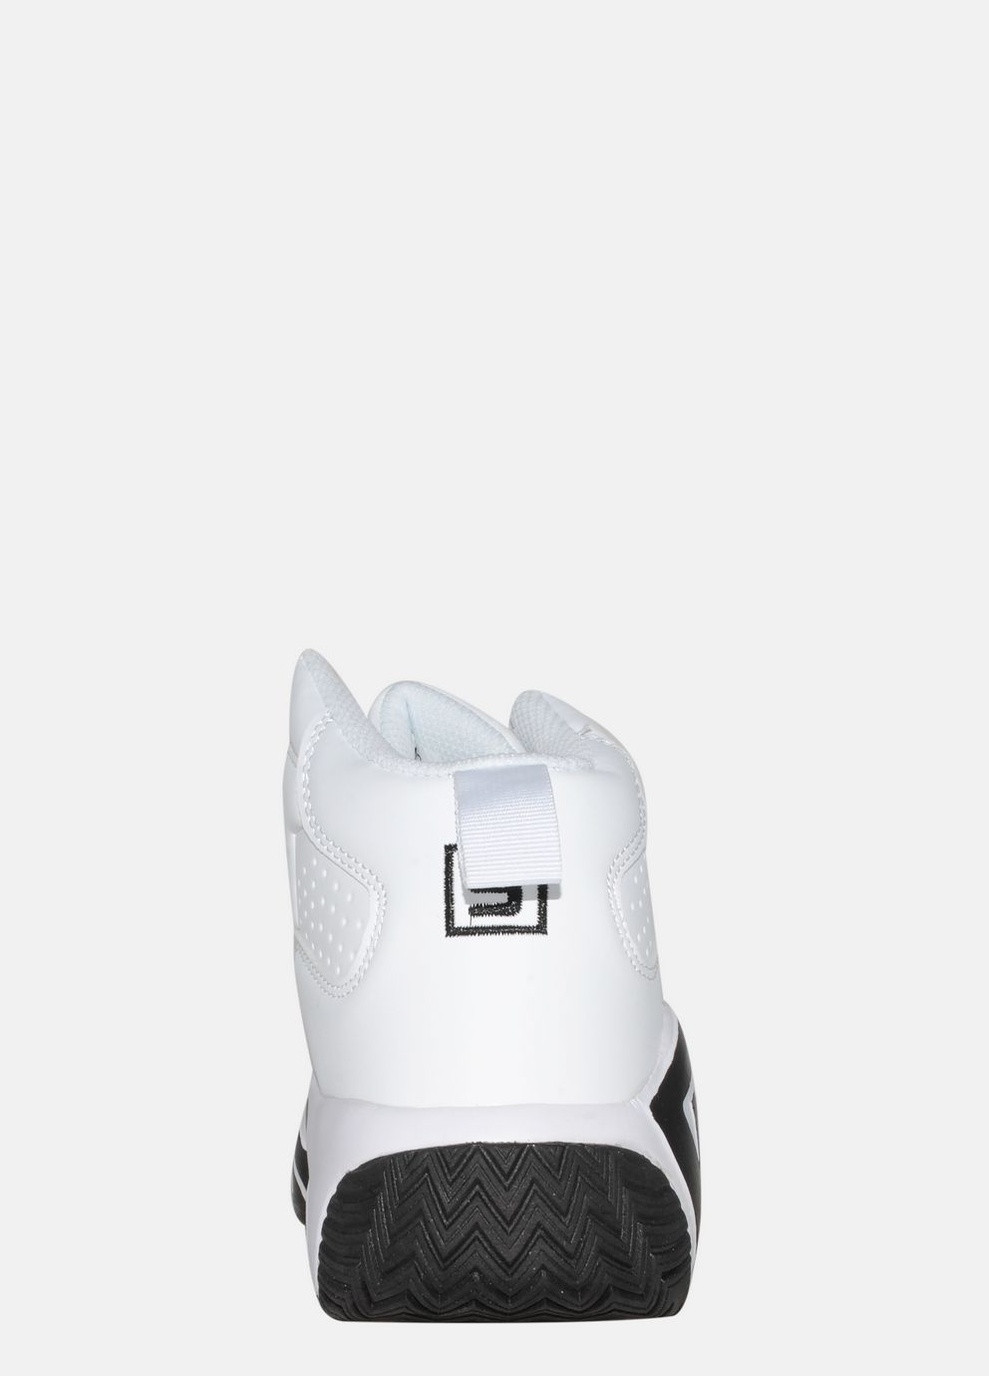 Осенние ботинки st3208-8 white Stilli из искусственной кожи